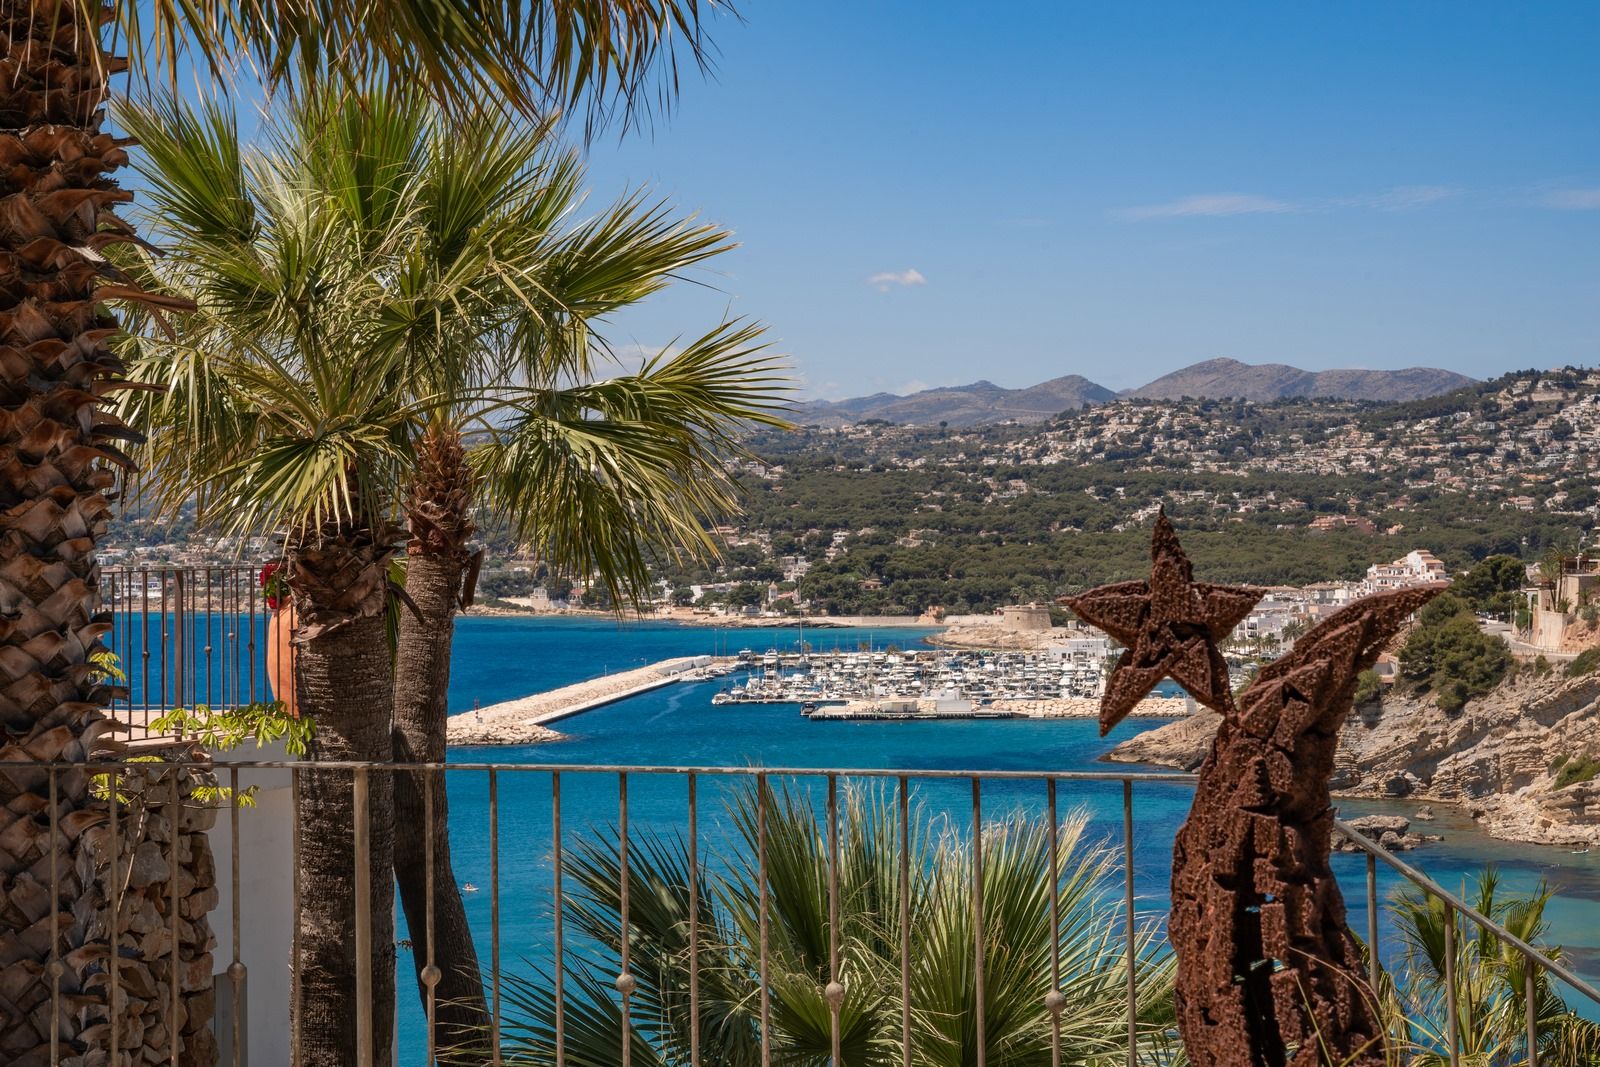 Luxe villa in Ibiza-stijl in El Portet met uitzicht op zee